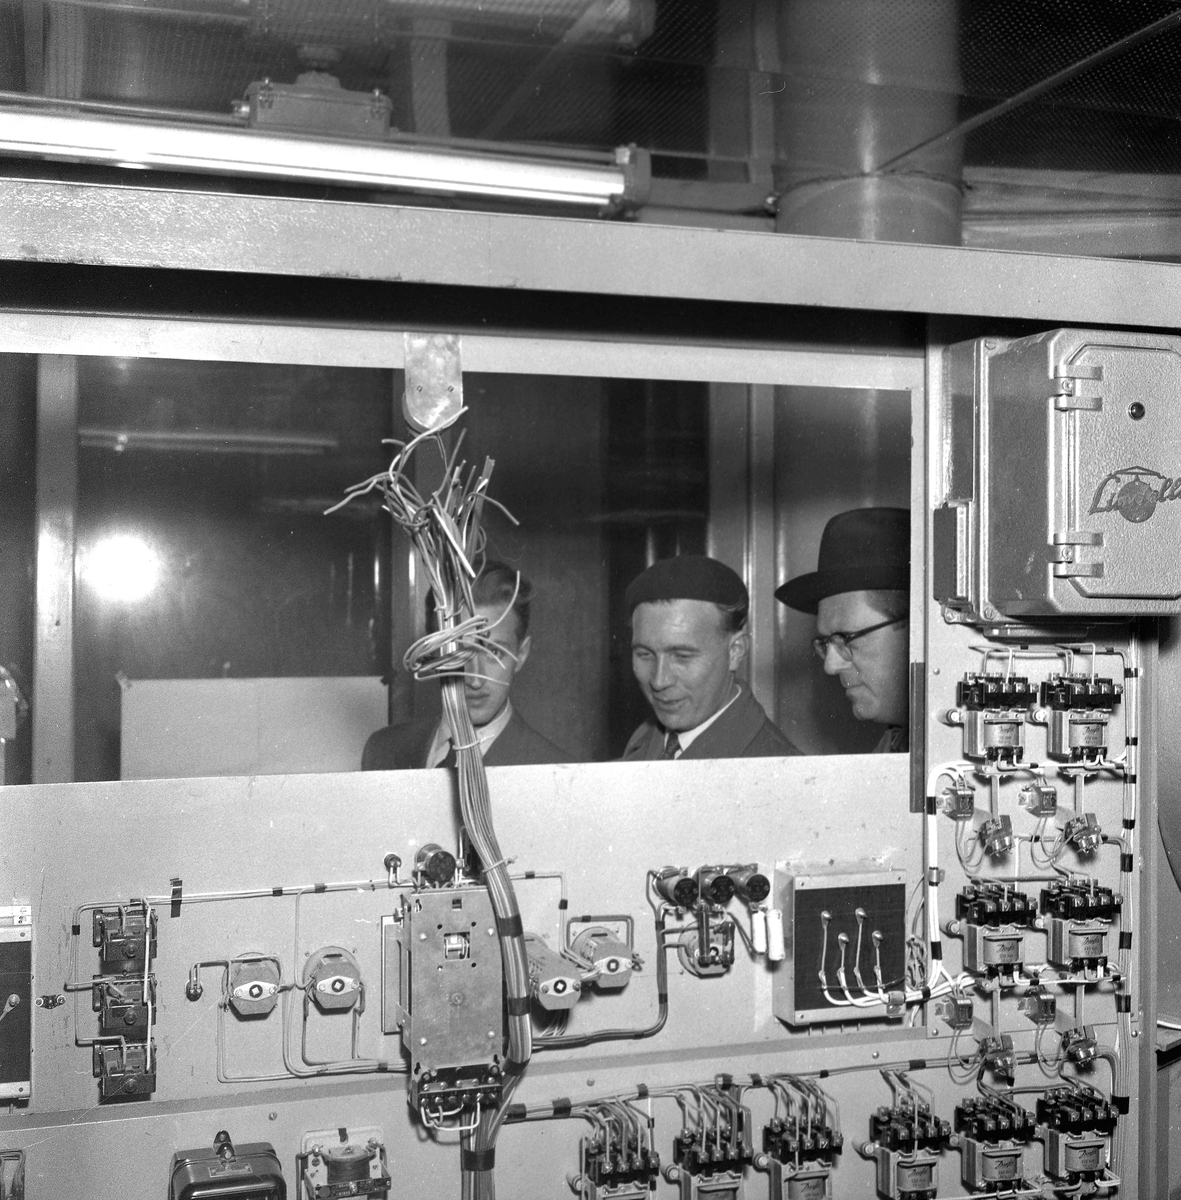 Hammars glasbruk.
December 1956.